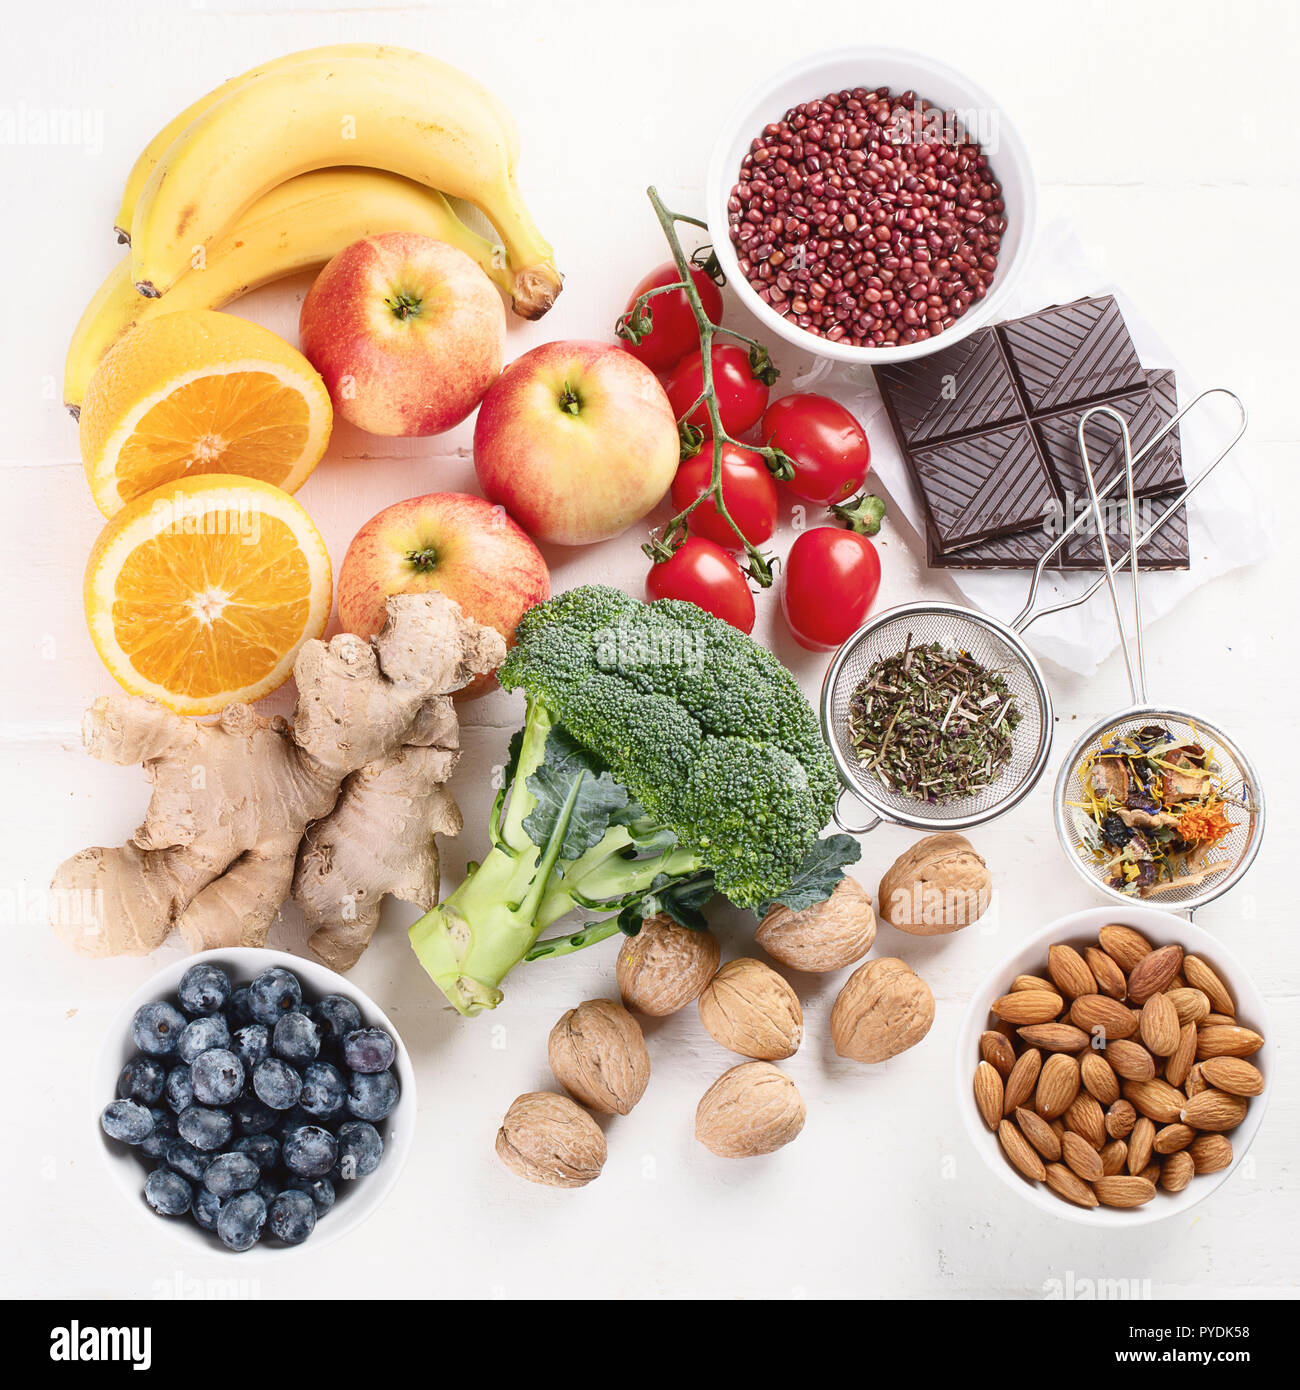 Fuentes Alimenticias De Antioxidantes Naturales Vista Desde Arriba Concepto De Dieta Saludable 3249